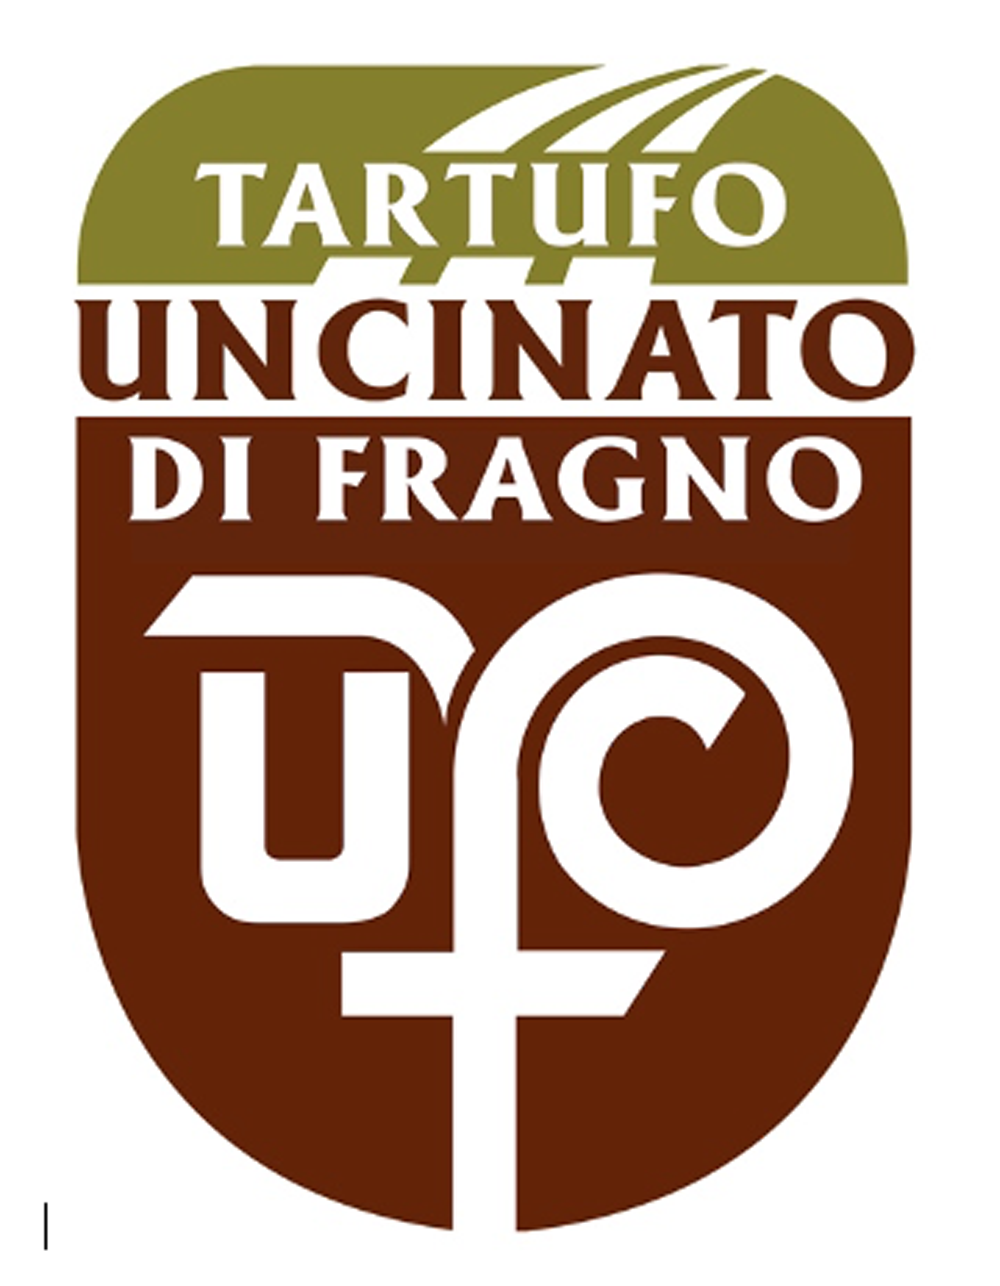 Denominazione Tartufo Uncinato di Fragno.